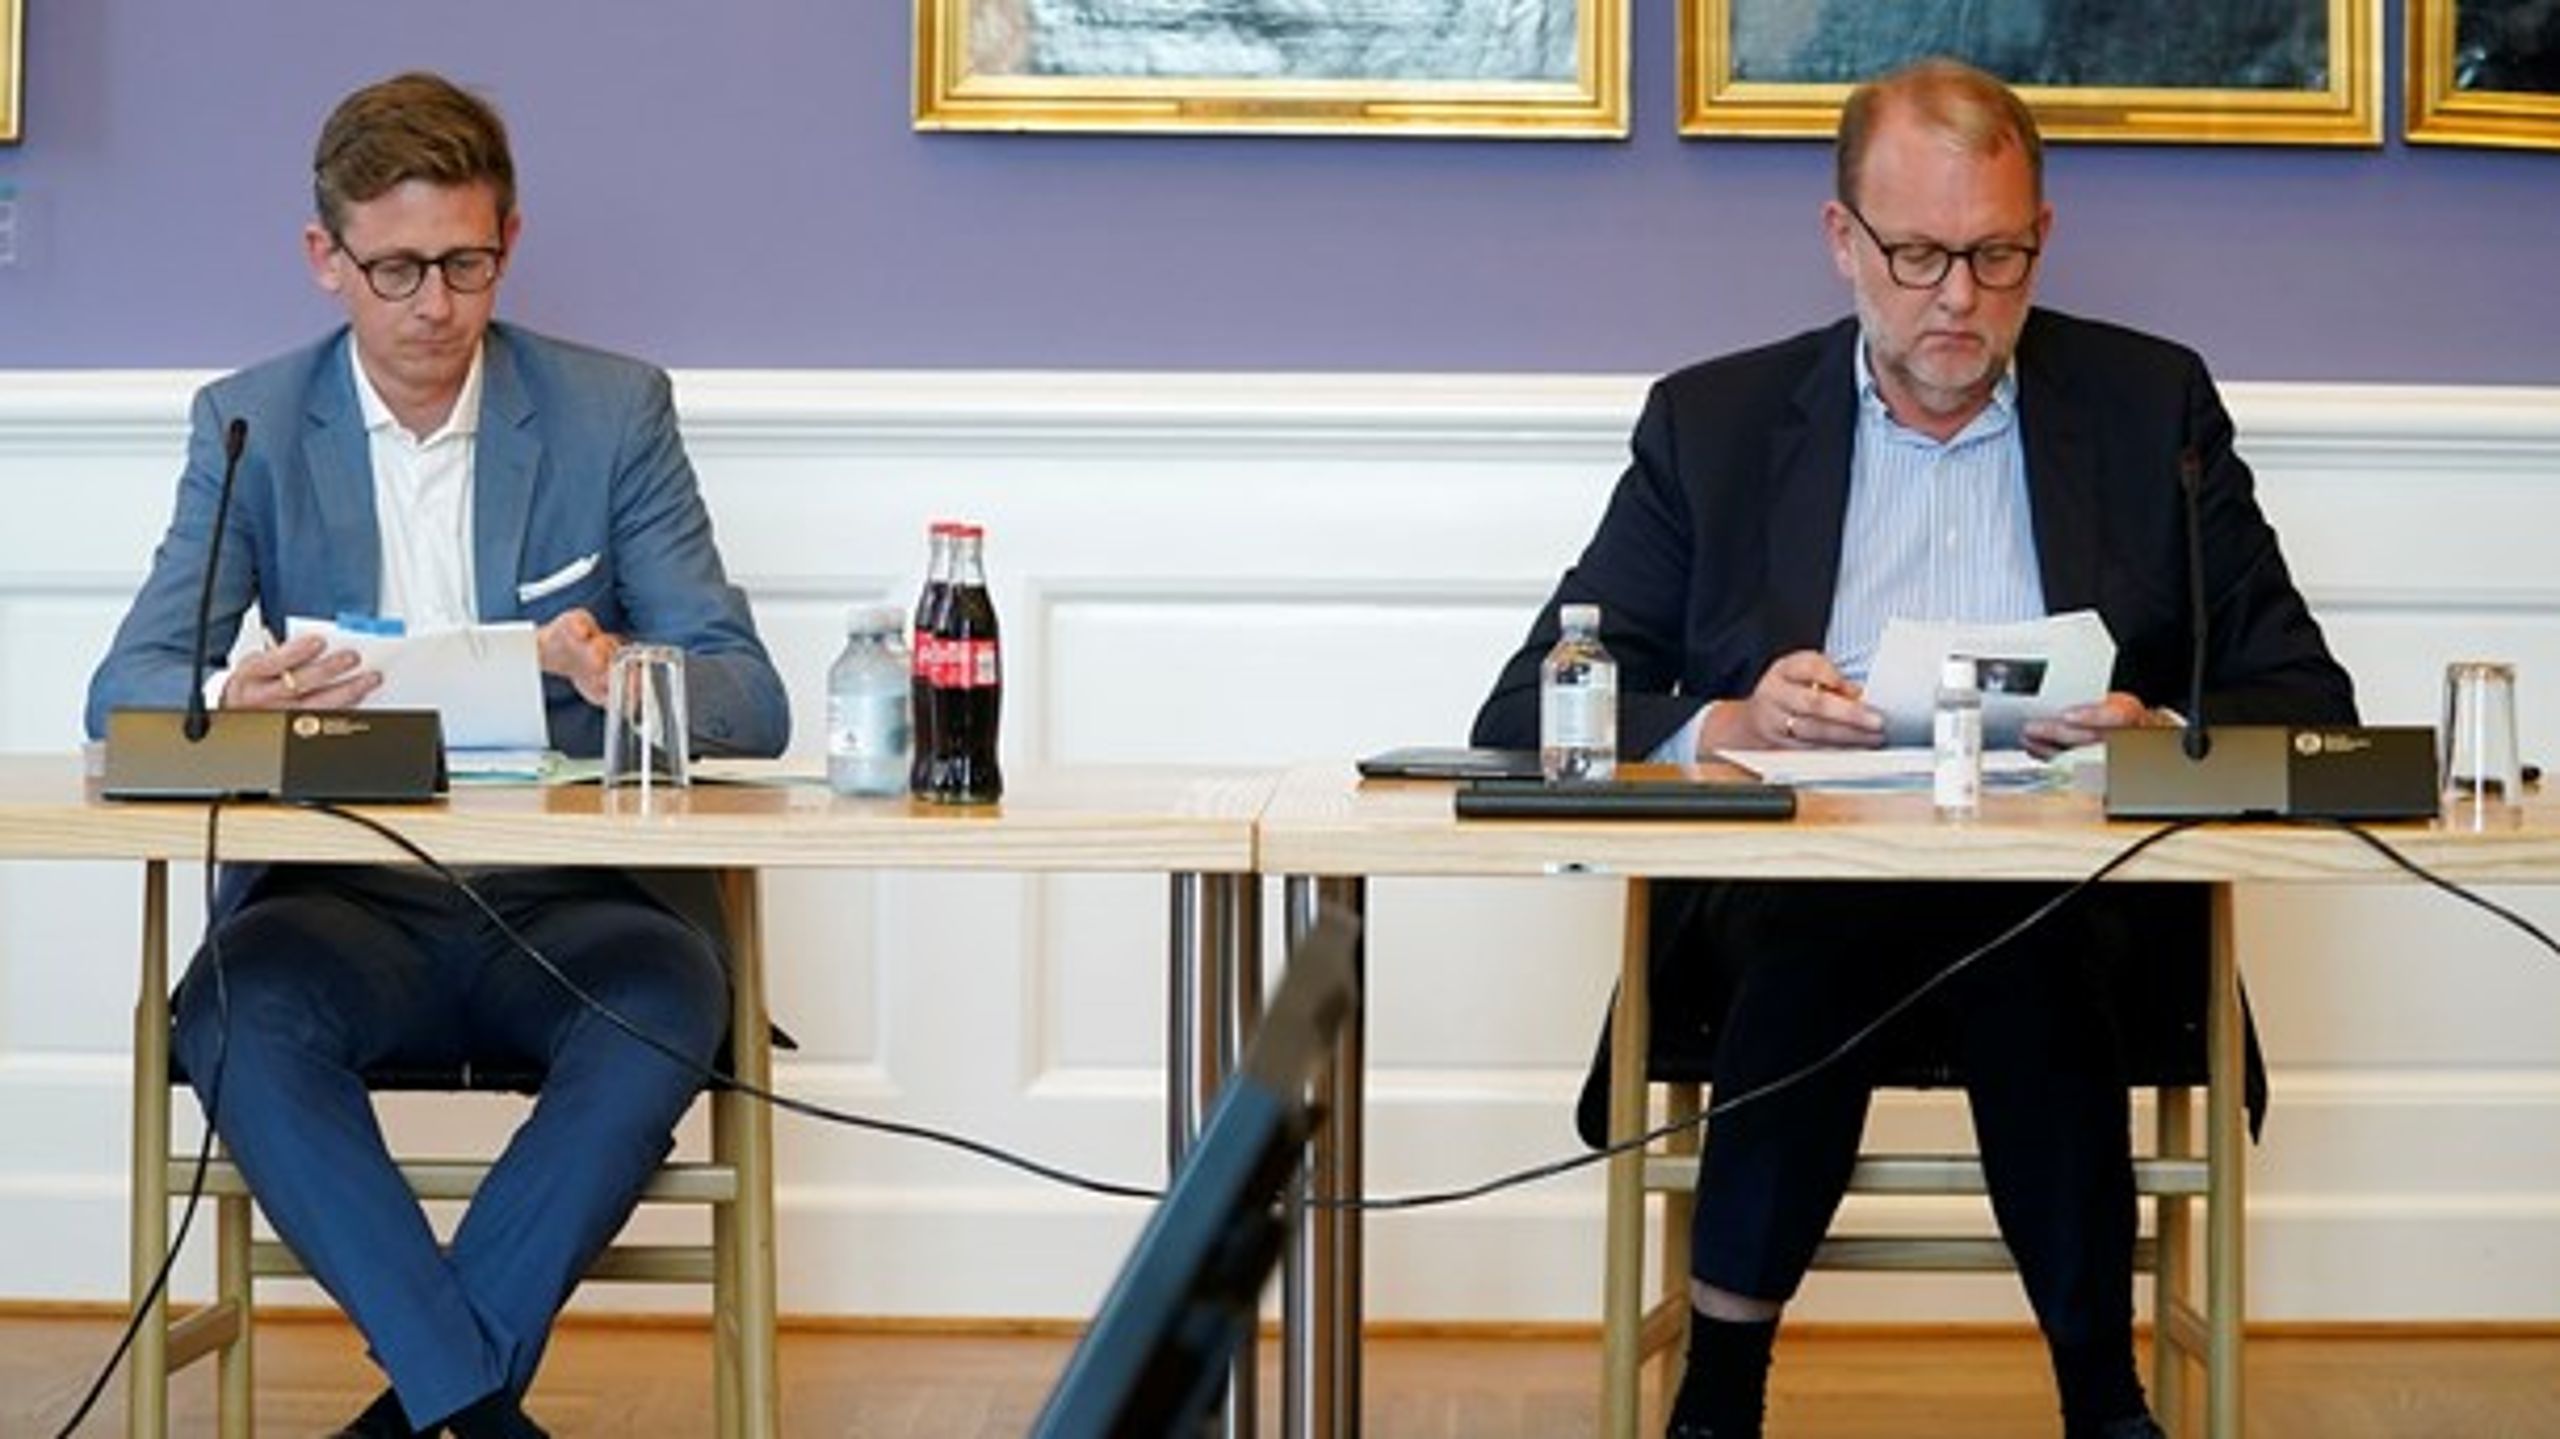 Dagens samrådsspørgsmål er blandt andet stillet af Venstres gruppeformand Karsten Lauritzen (t.v.) og partiets forsvarsordfører Lars Christian Lilleholt (t.h.).